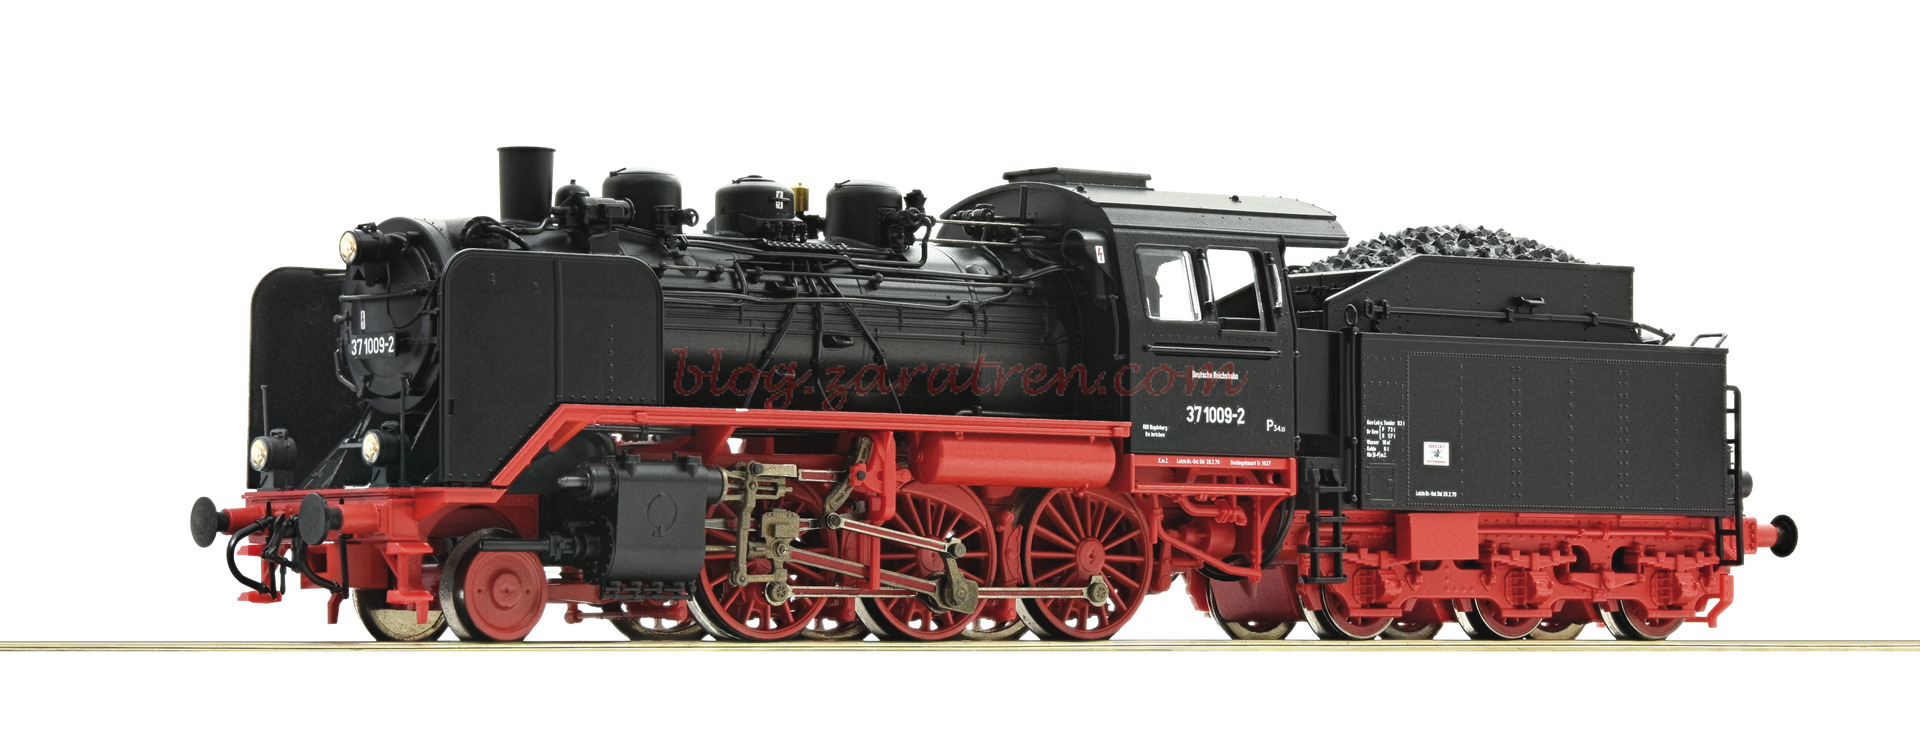 Roco – Locomotora de Vapor 37 1009-2, DR, D. Sonido, Epoca IV, Escala H0. Ref: 71212.